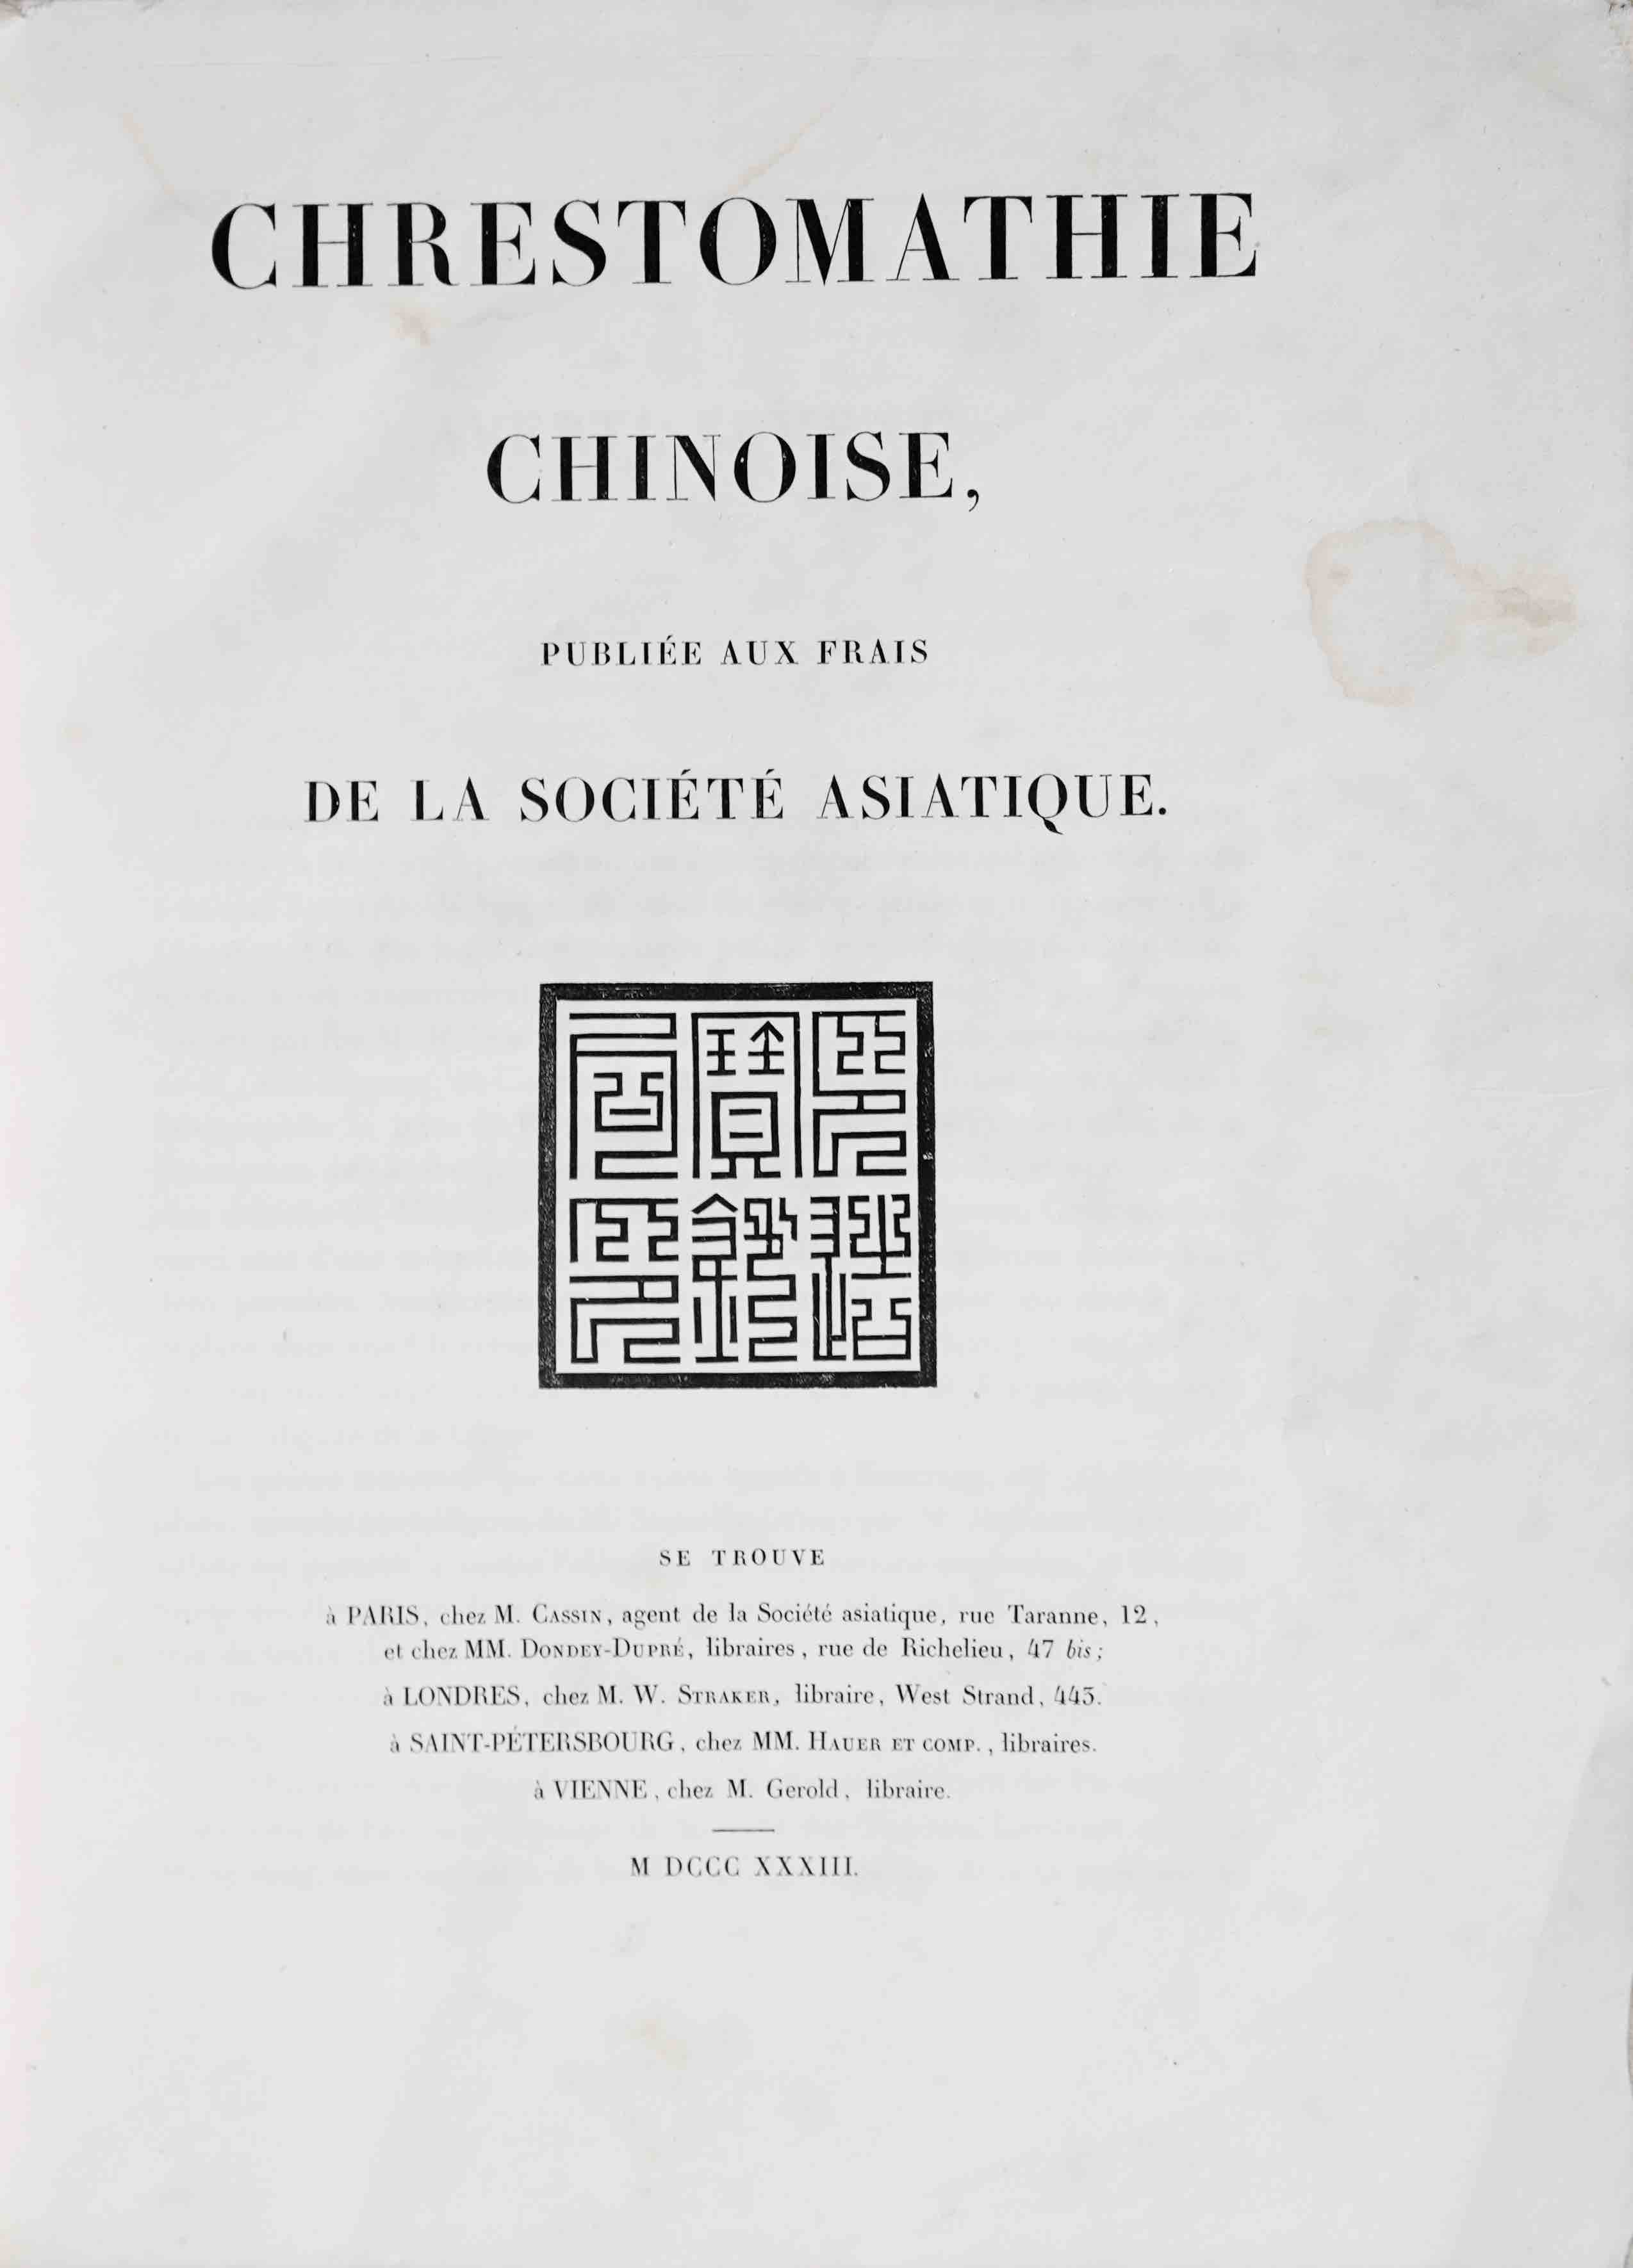 KLAPROTH, HEINRICH JULIUS (Ed.): -  Chrestomathie chinoise, publie aux frais de la Socit Asiatique. Paris, chez M. Cassin [etc.], 1833.